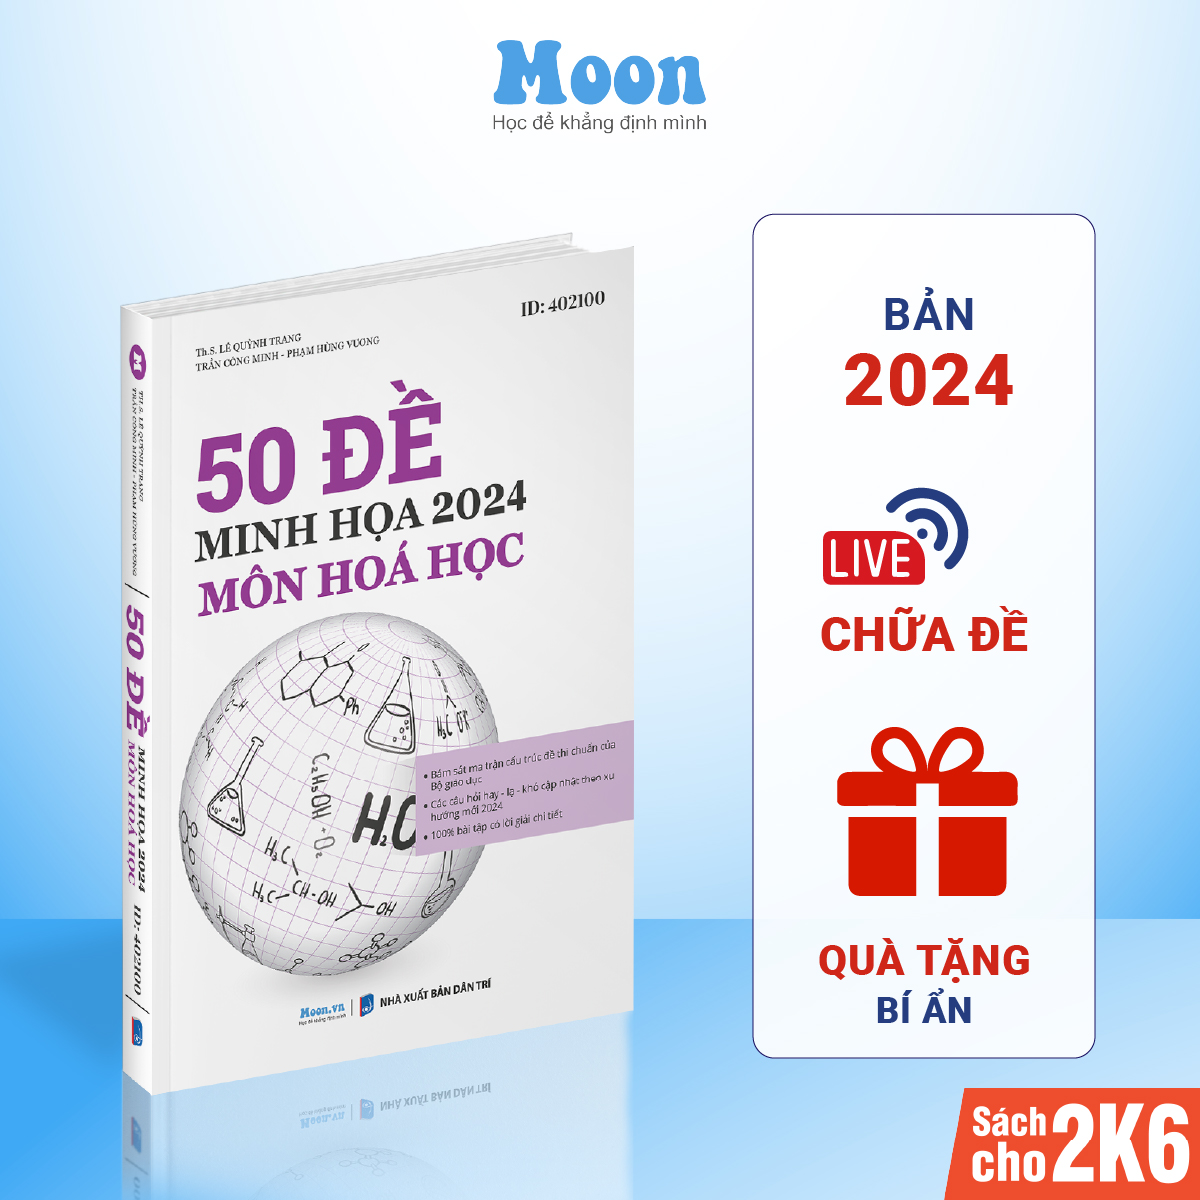 Sách Bộ 50 Đề minh hoạ môn Hoá bản 2024, luyện thi trắc nghiệm THPT quốc gia Moonbook cho 2k6